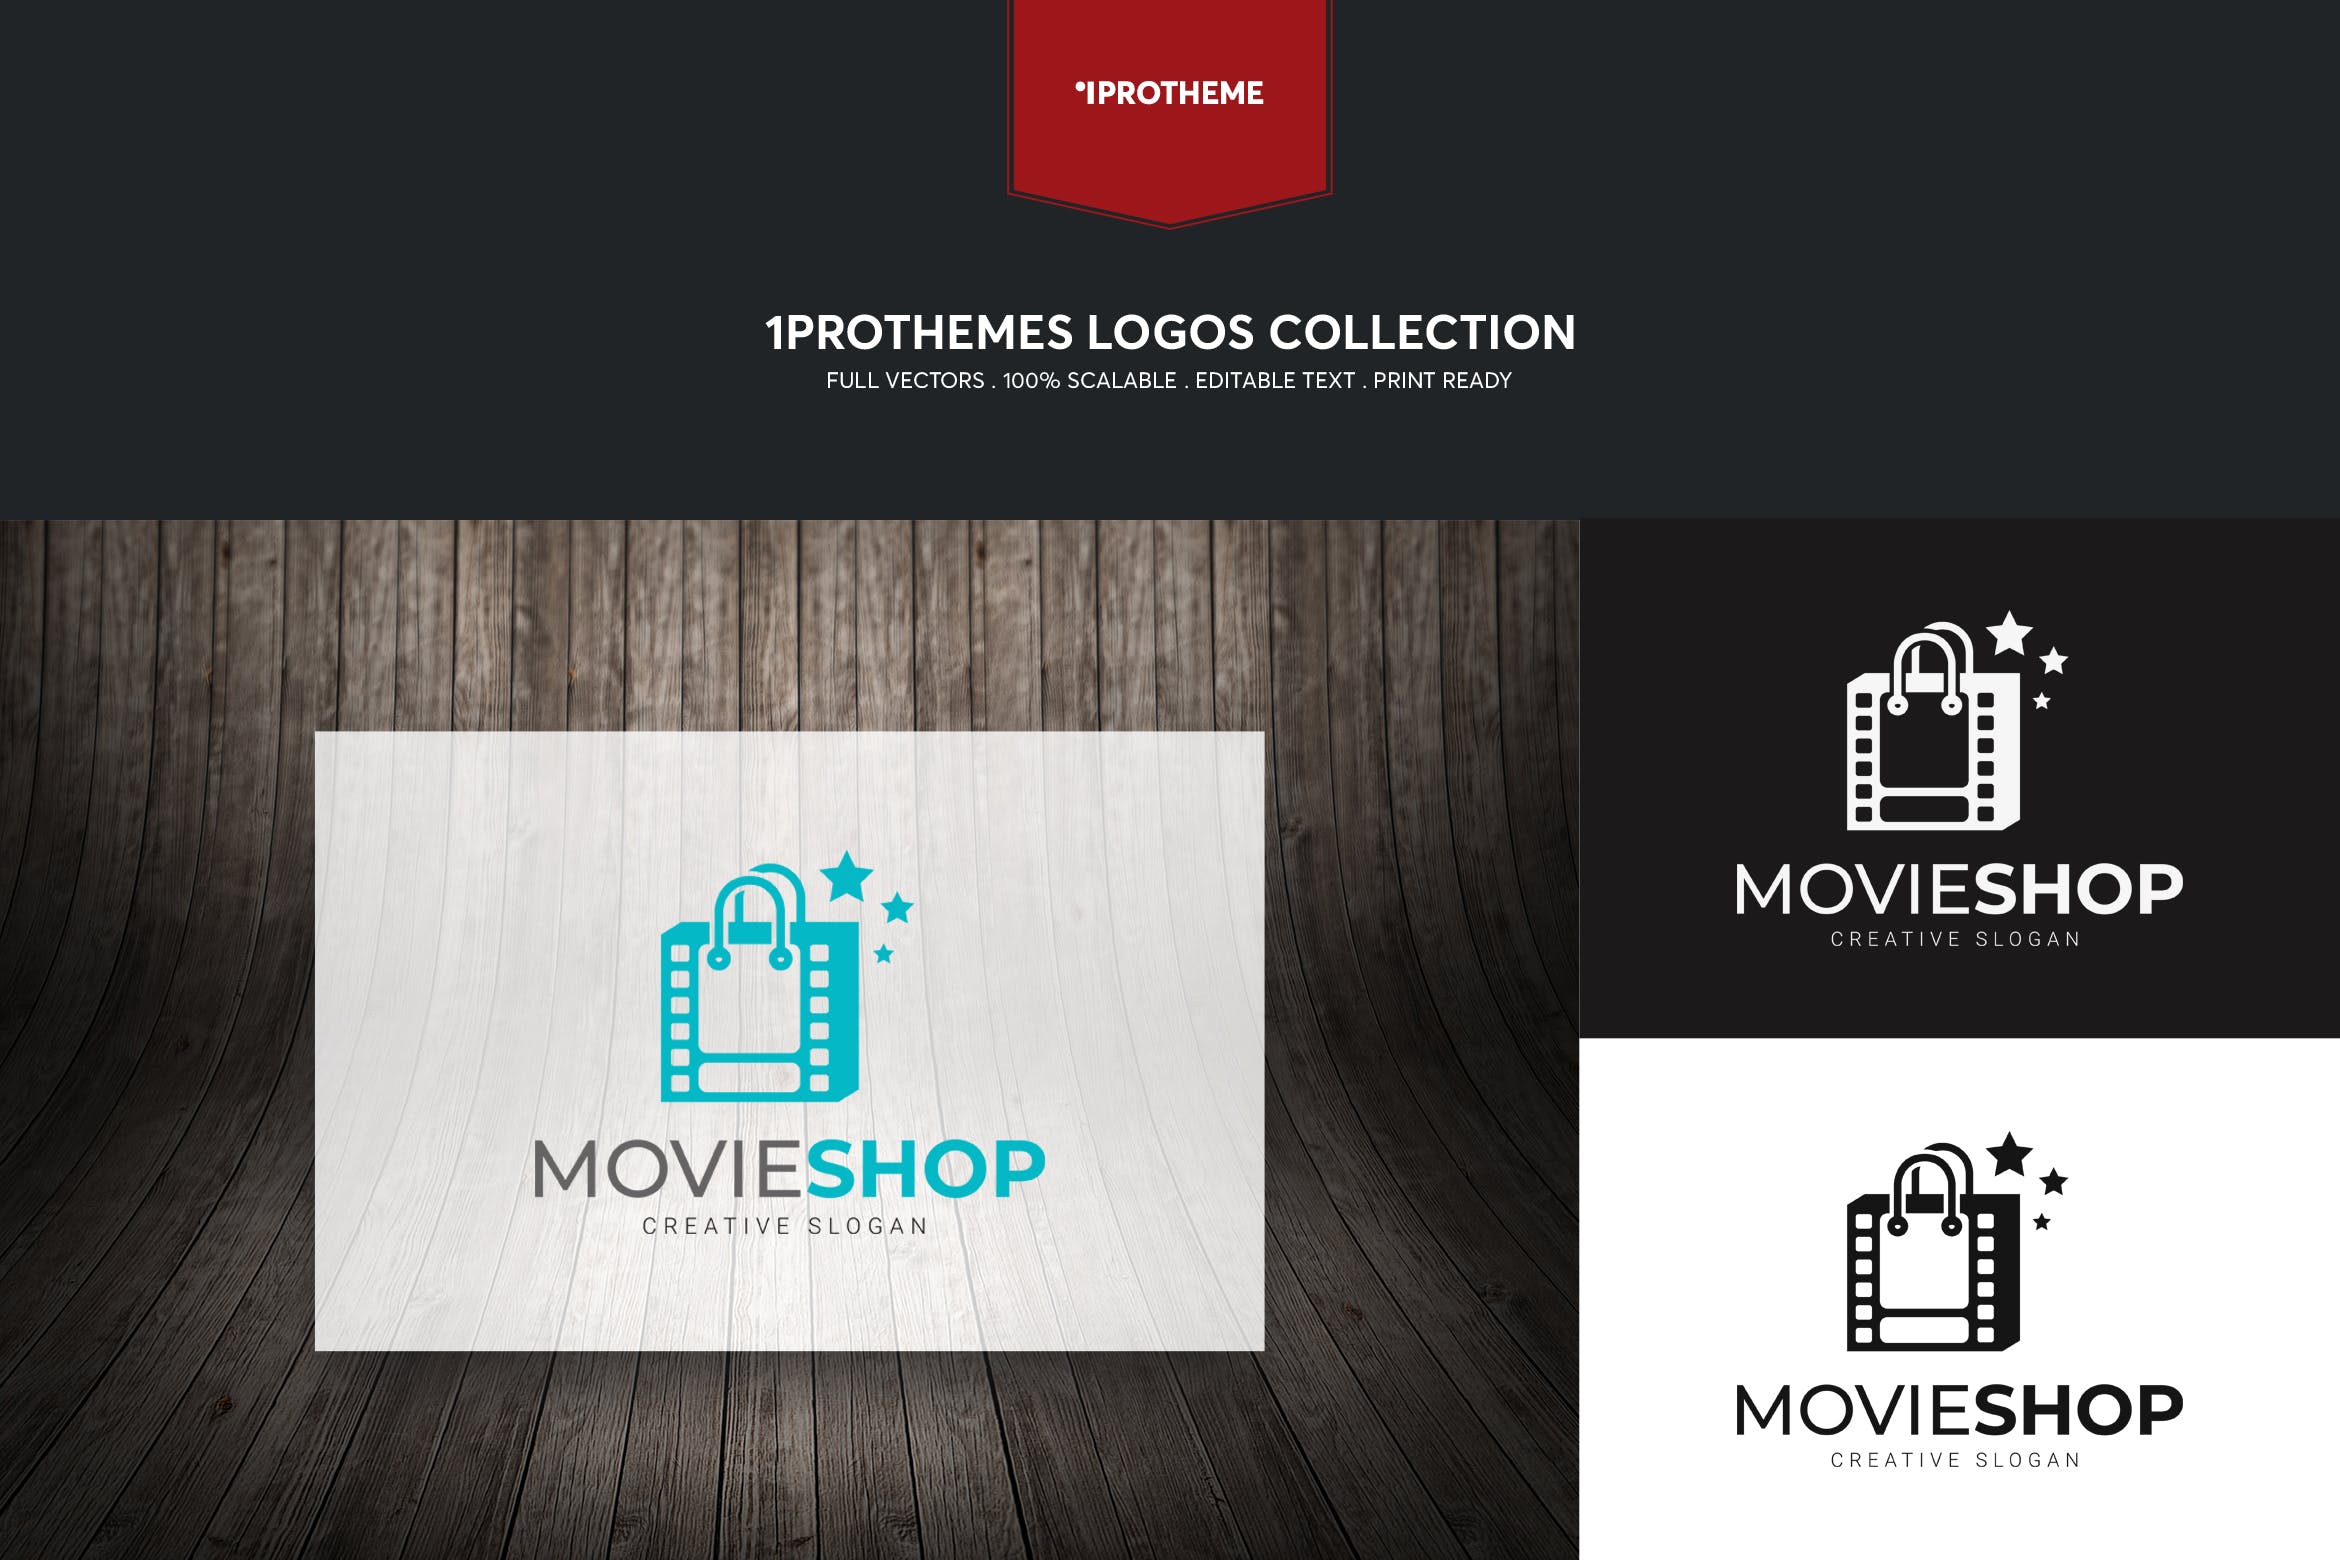 数字电影商店品牌Logo设计第一素材精选模板 Movie Shop Logo Template插图